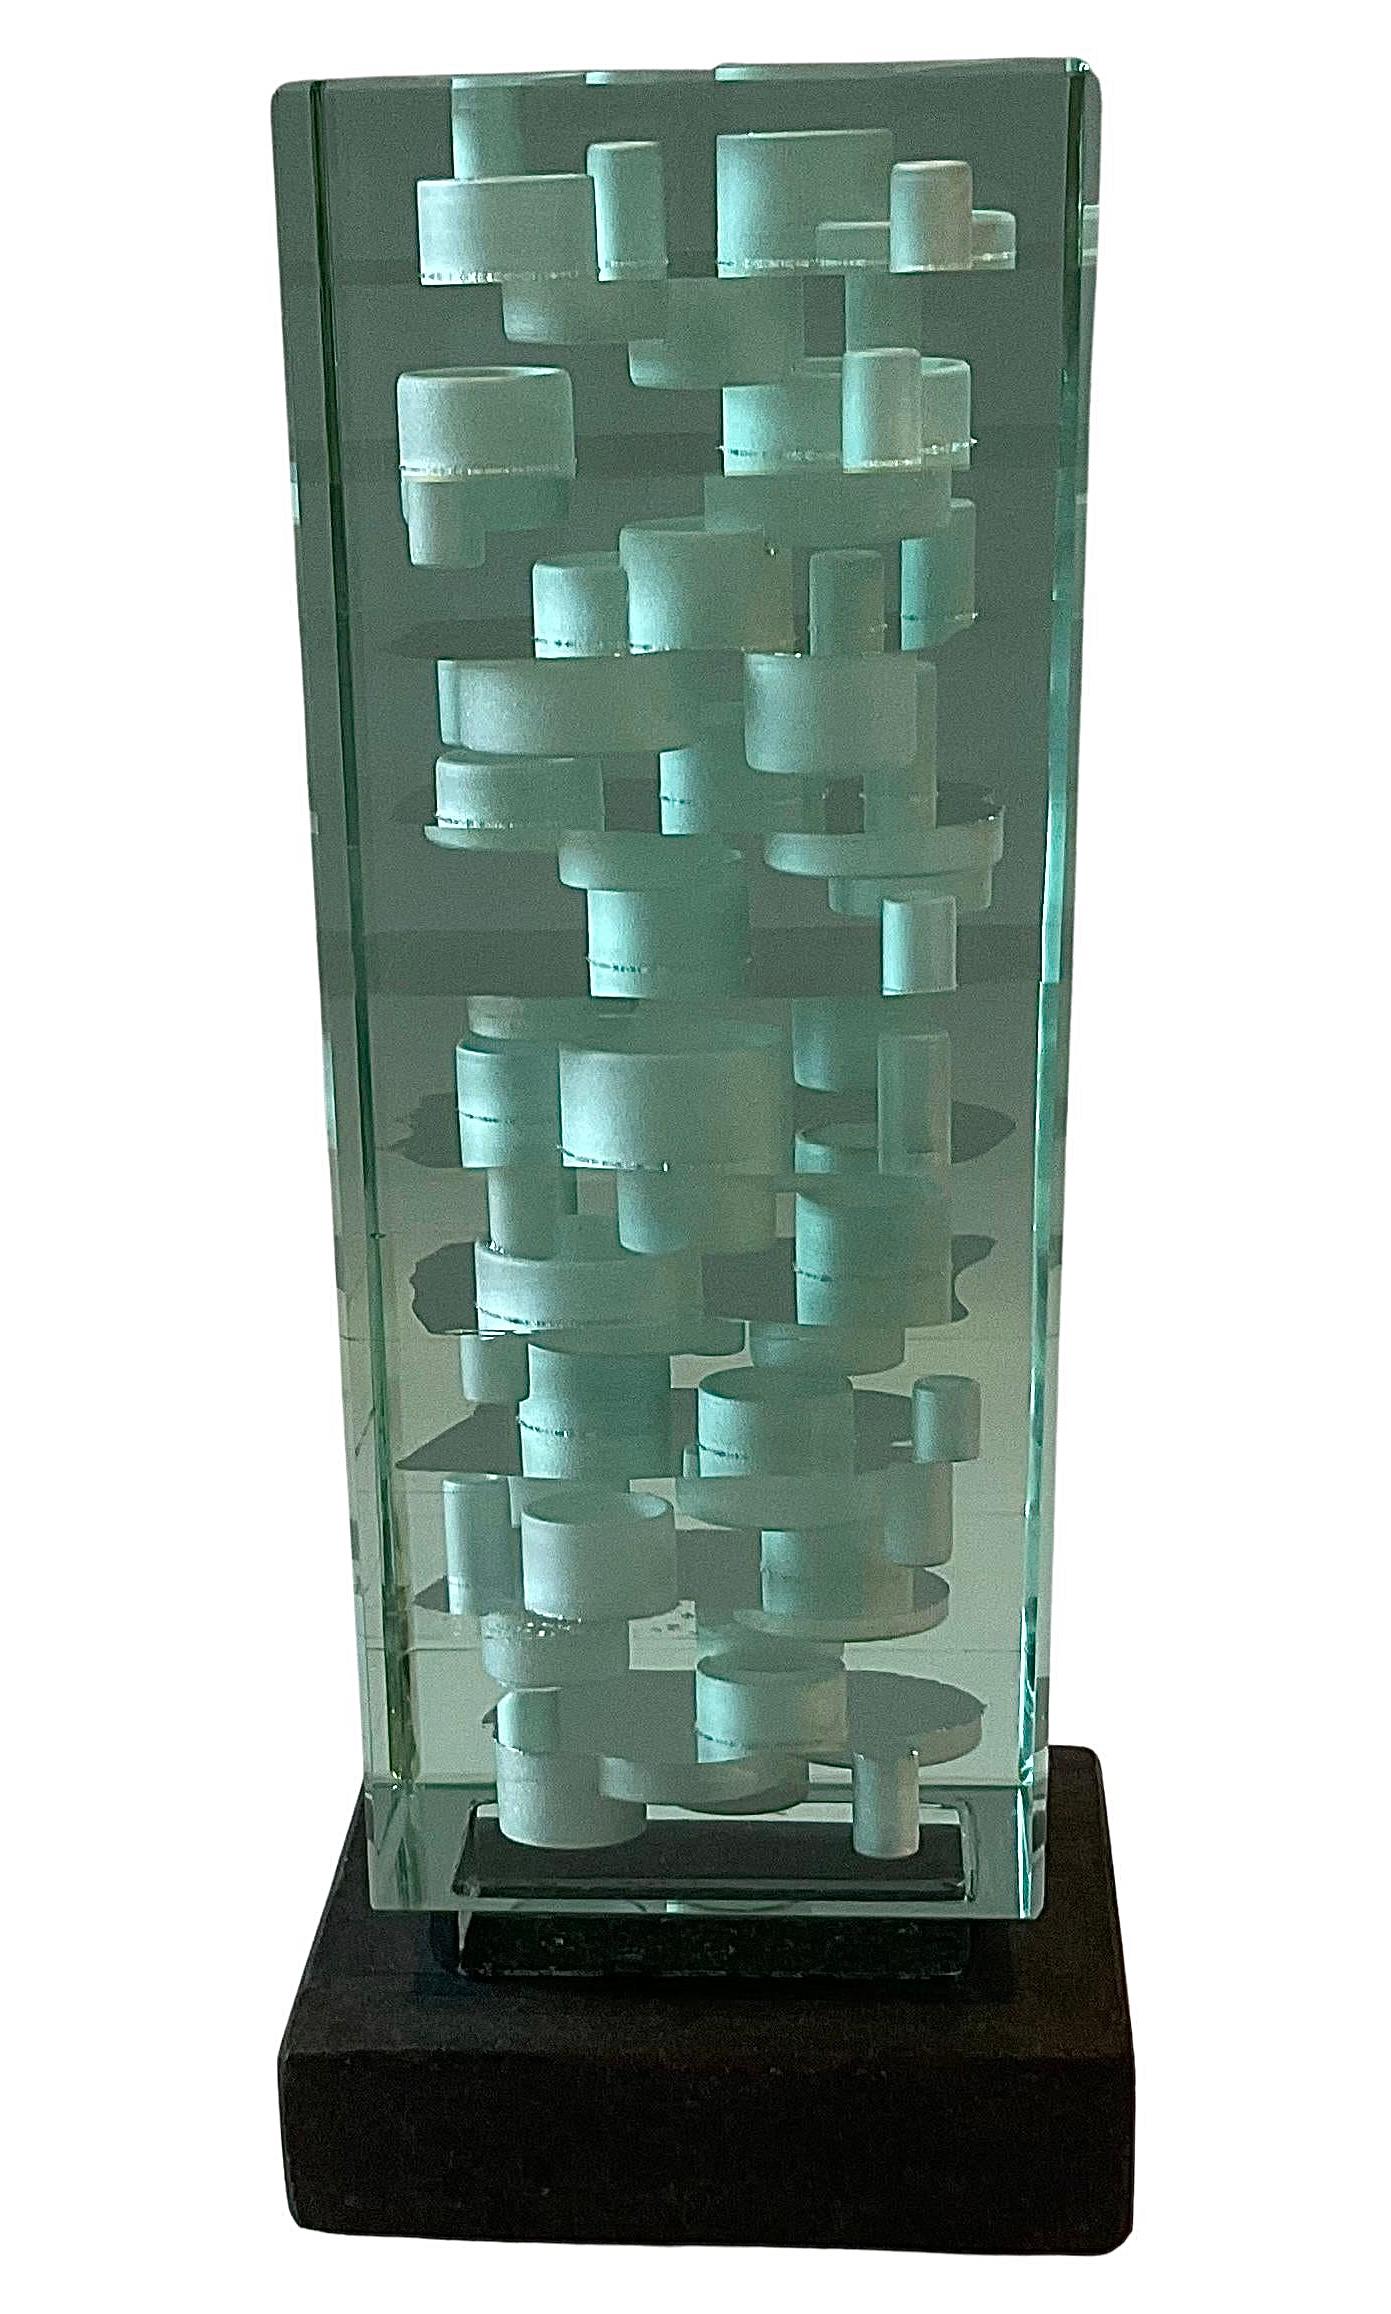 Erstaunliche abstrakte Murano-Glasskulptur, signiert und datiert von Luciano Vistosi. Kräftig grünes, geschichtetes Glas mit abstrakten weißen Formen. Datiert 1985. 